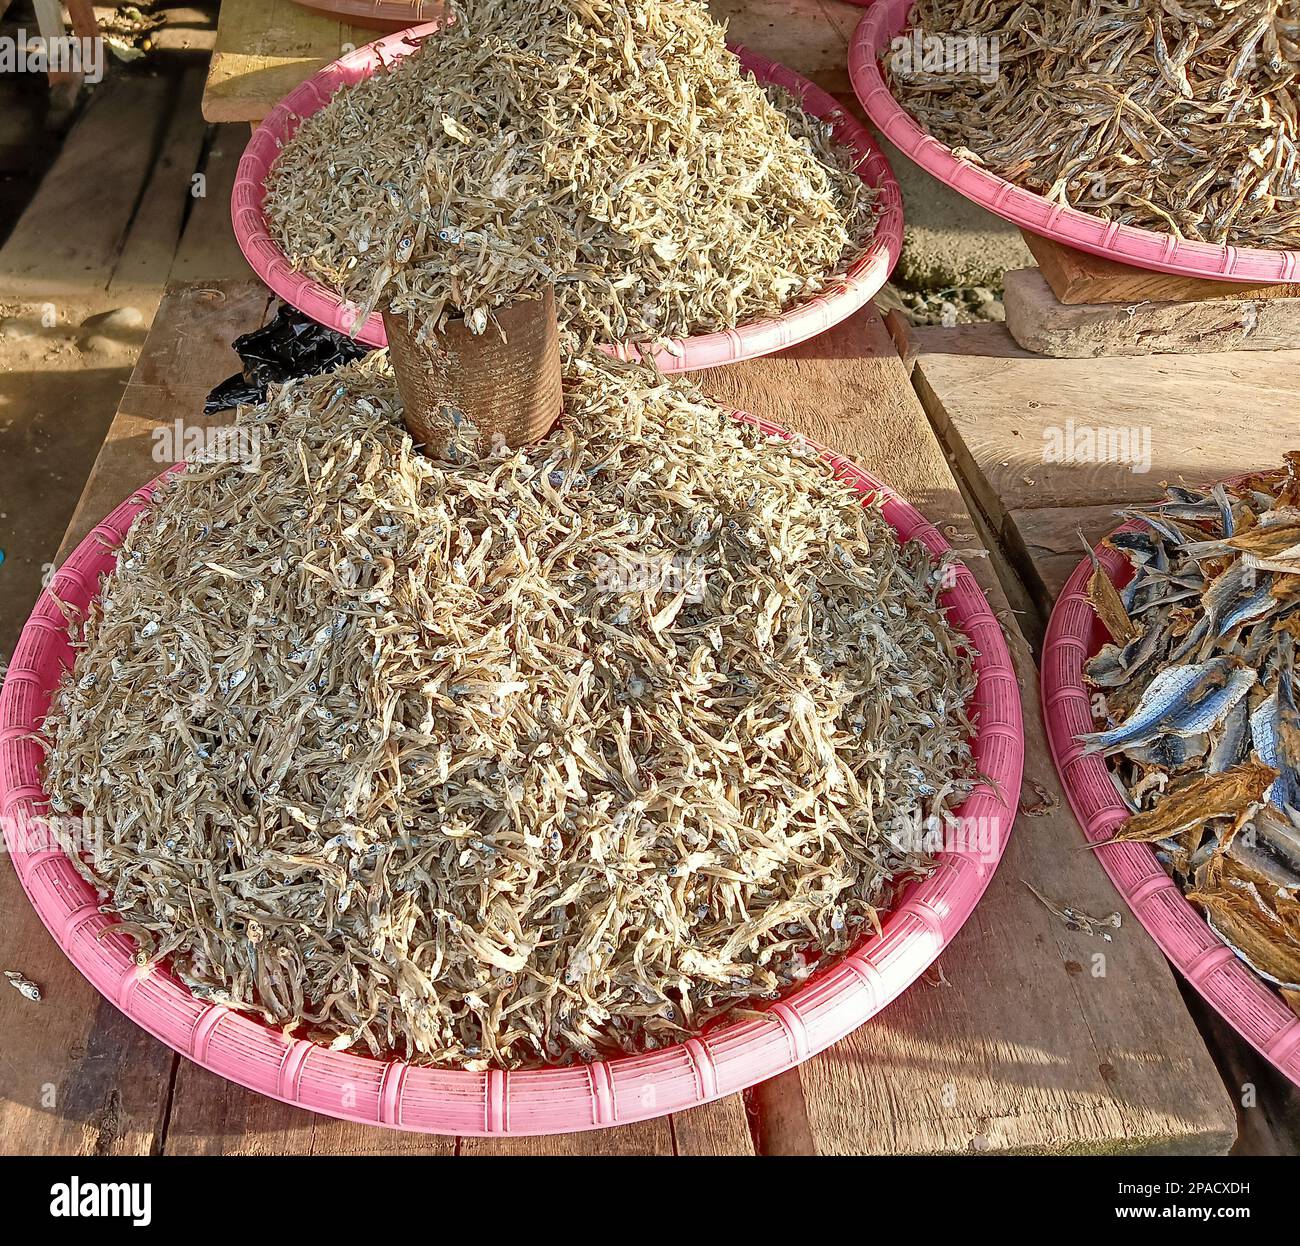 Las anchoas secas se venden ampliamente en los mercados tradicionales de Indonesia. Foto de stock